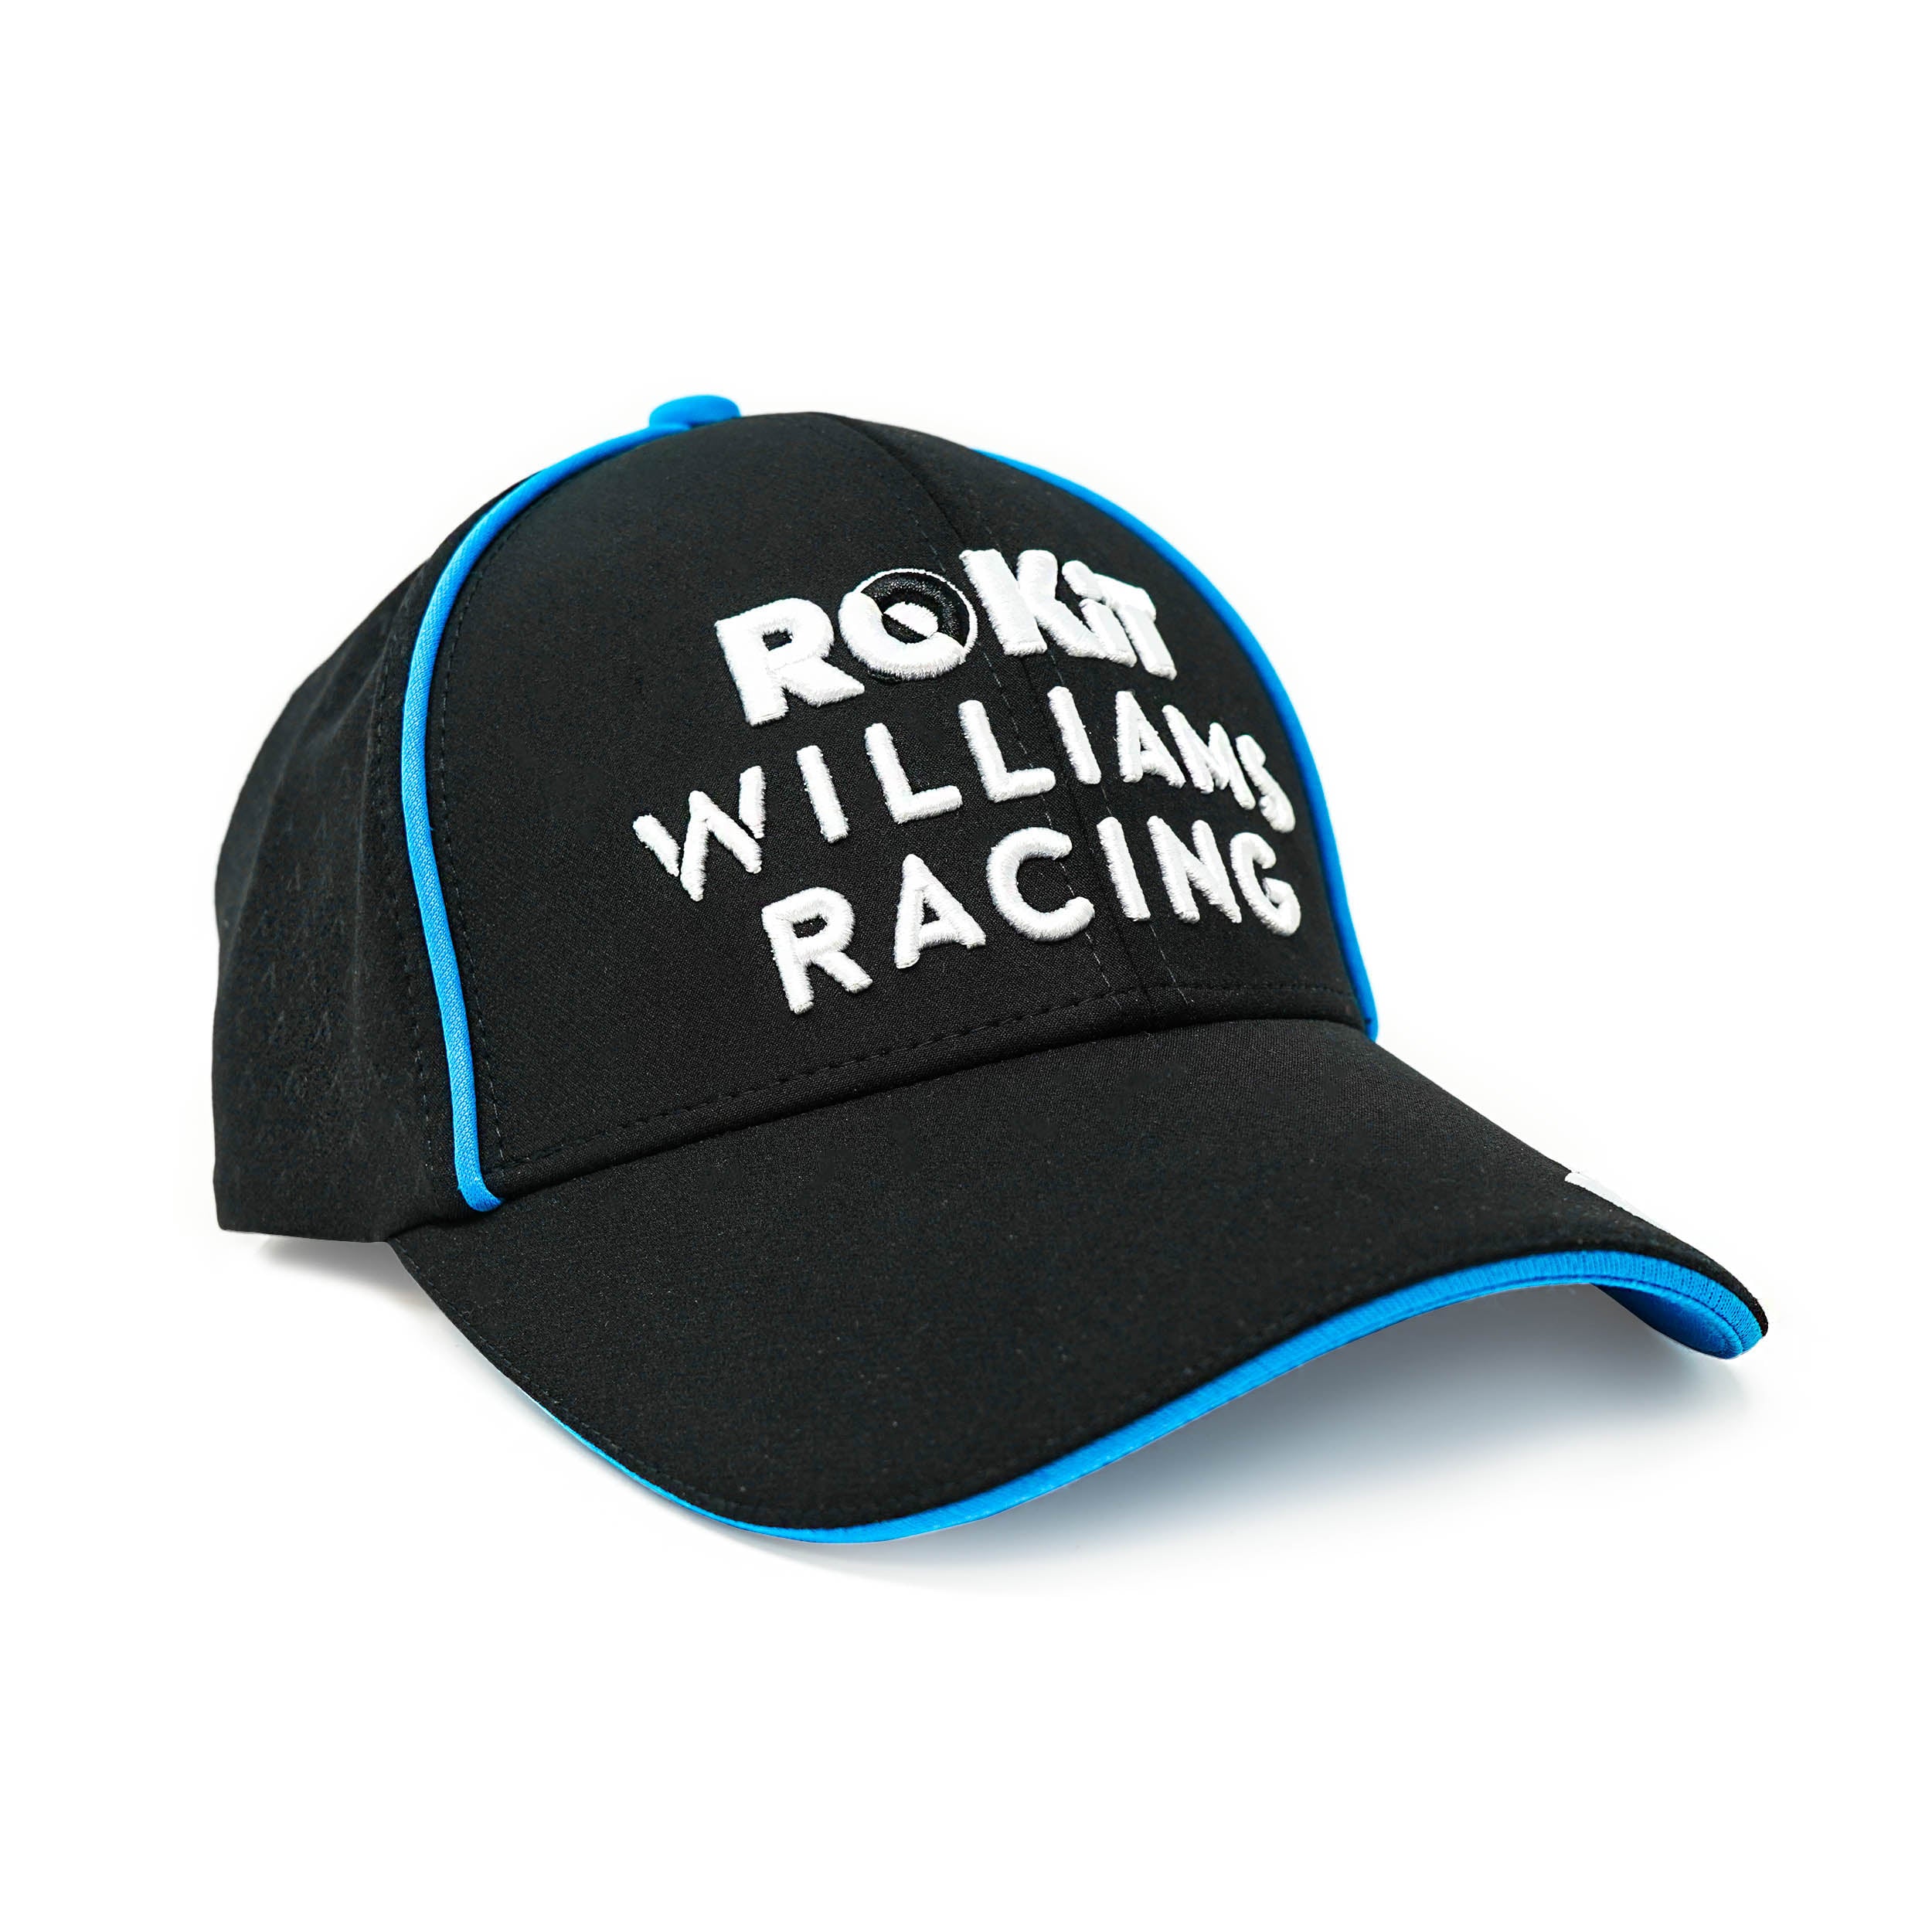 Williams Racing 2020 Black Team Cap 